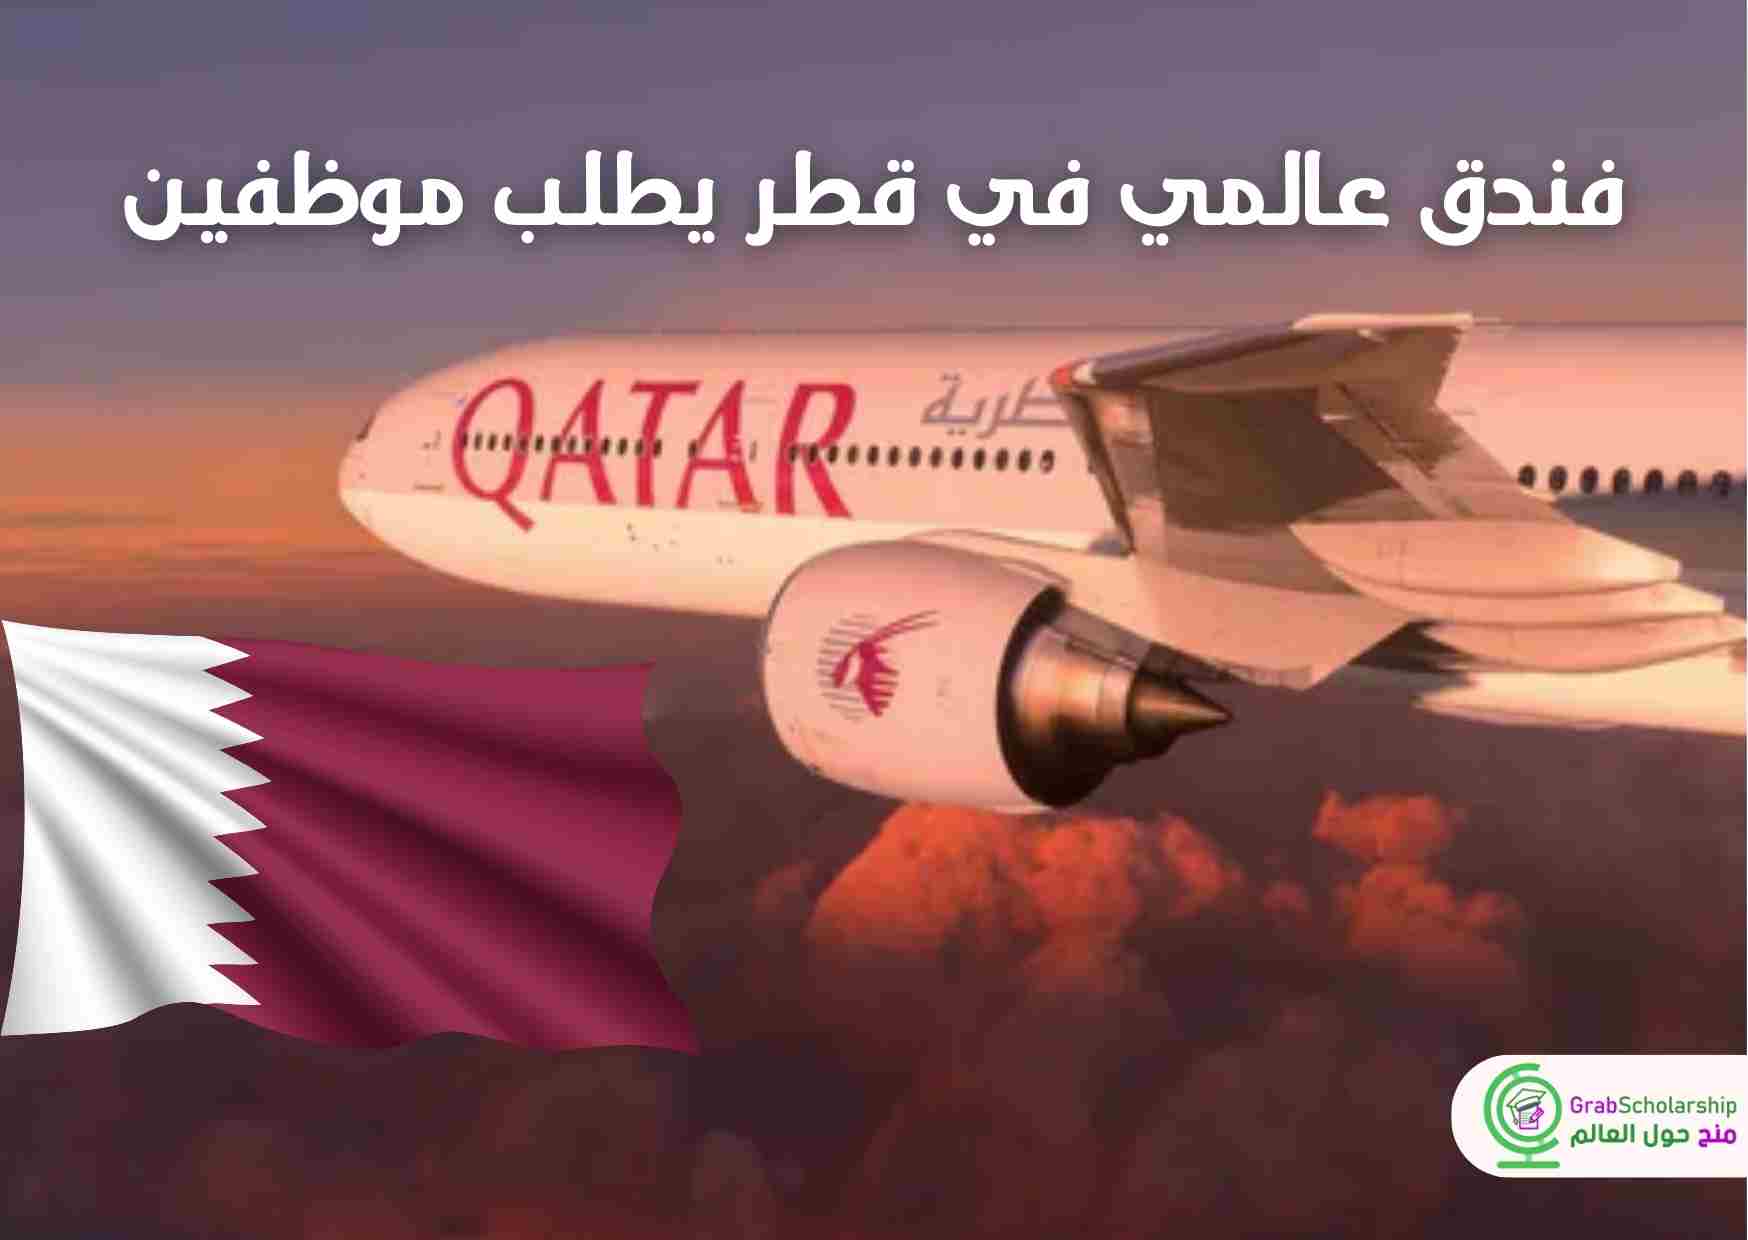 فندق عالمي في قطر يطلب موظفين براتب مرتفع مع التأشيرة